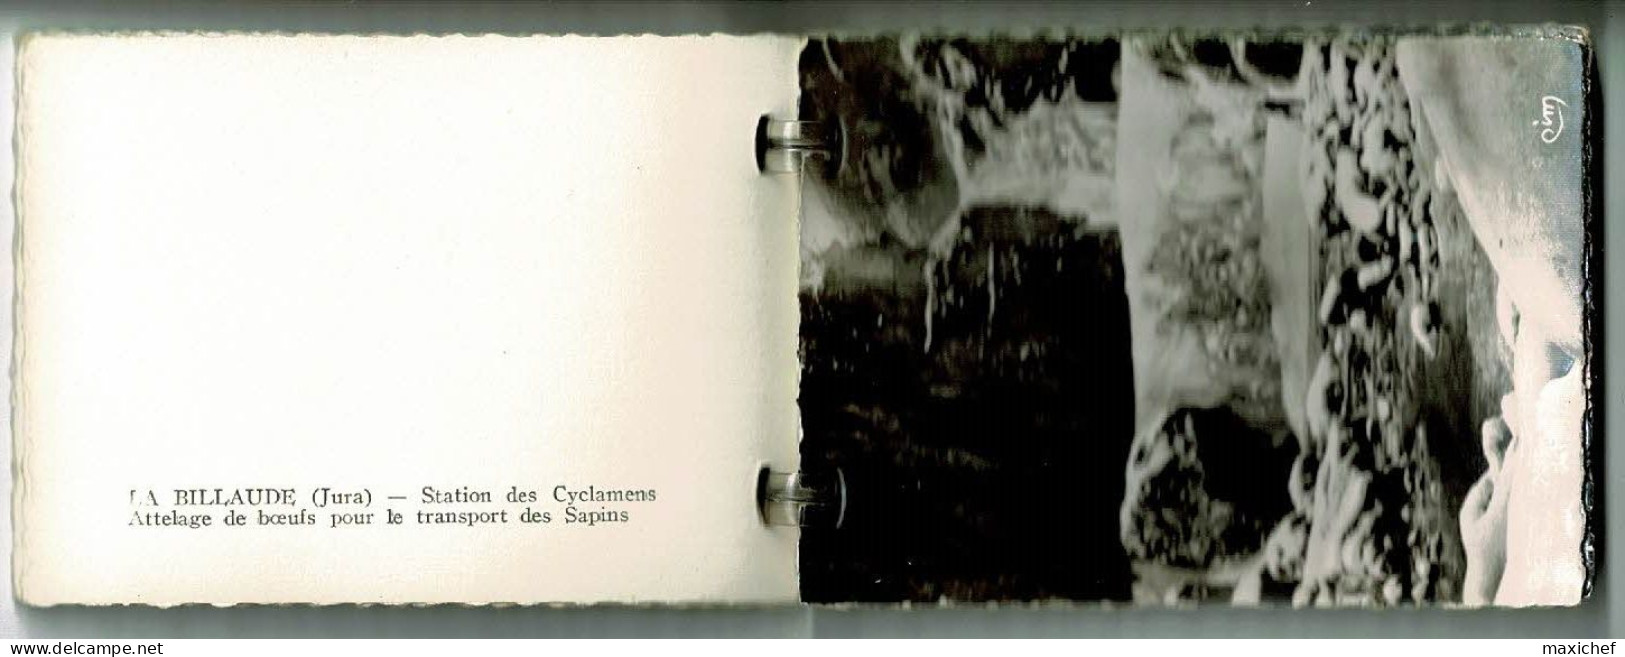 Carnet mini-vues (10) Souvenir Voyage à La Billaude (Vue aérienne, cascade, attelage boeufs, Le Vaudioux) format 6 X 9